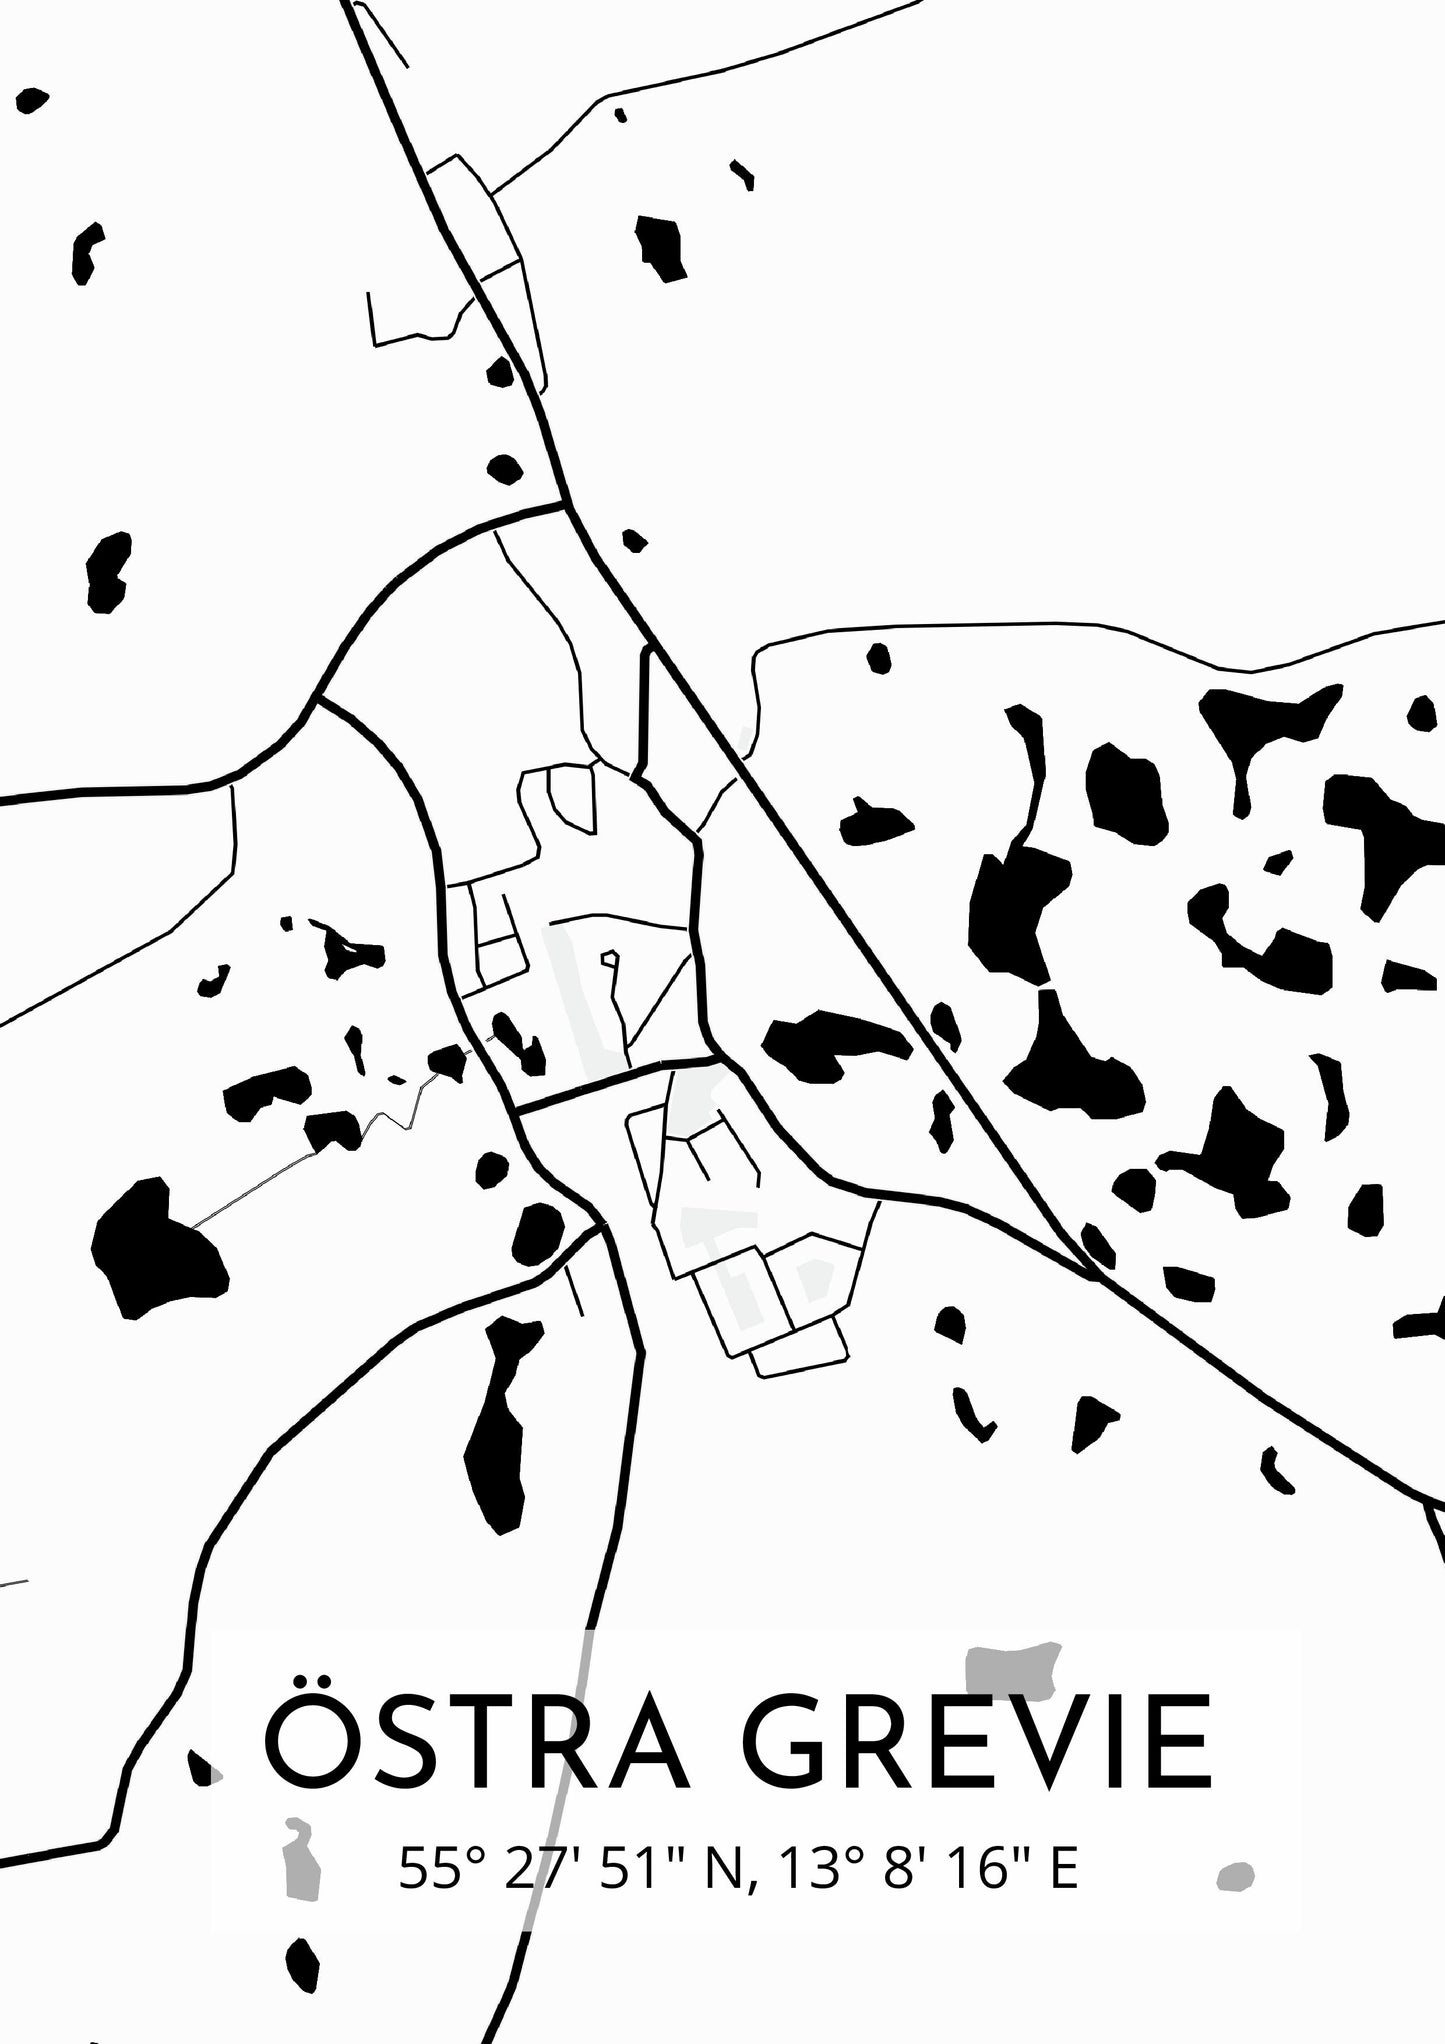 Östra Grevie